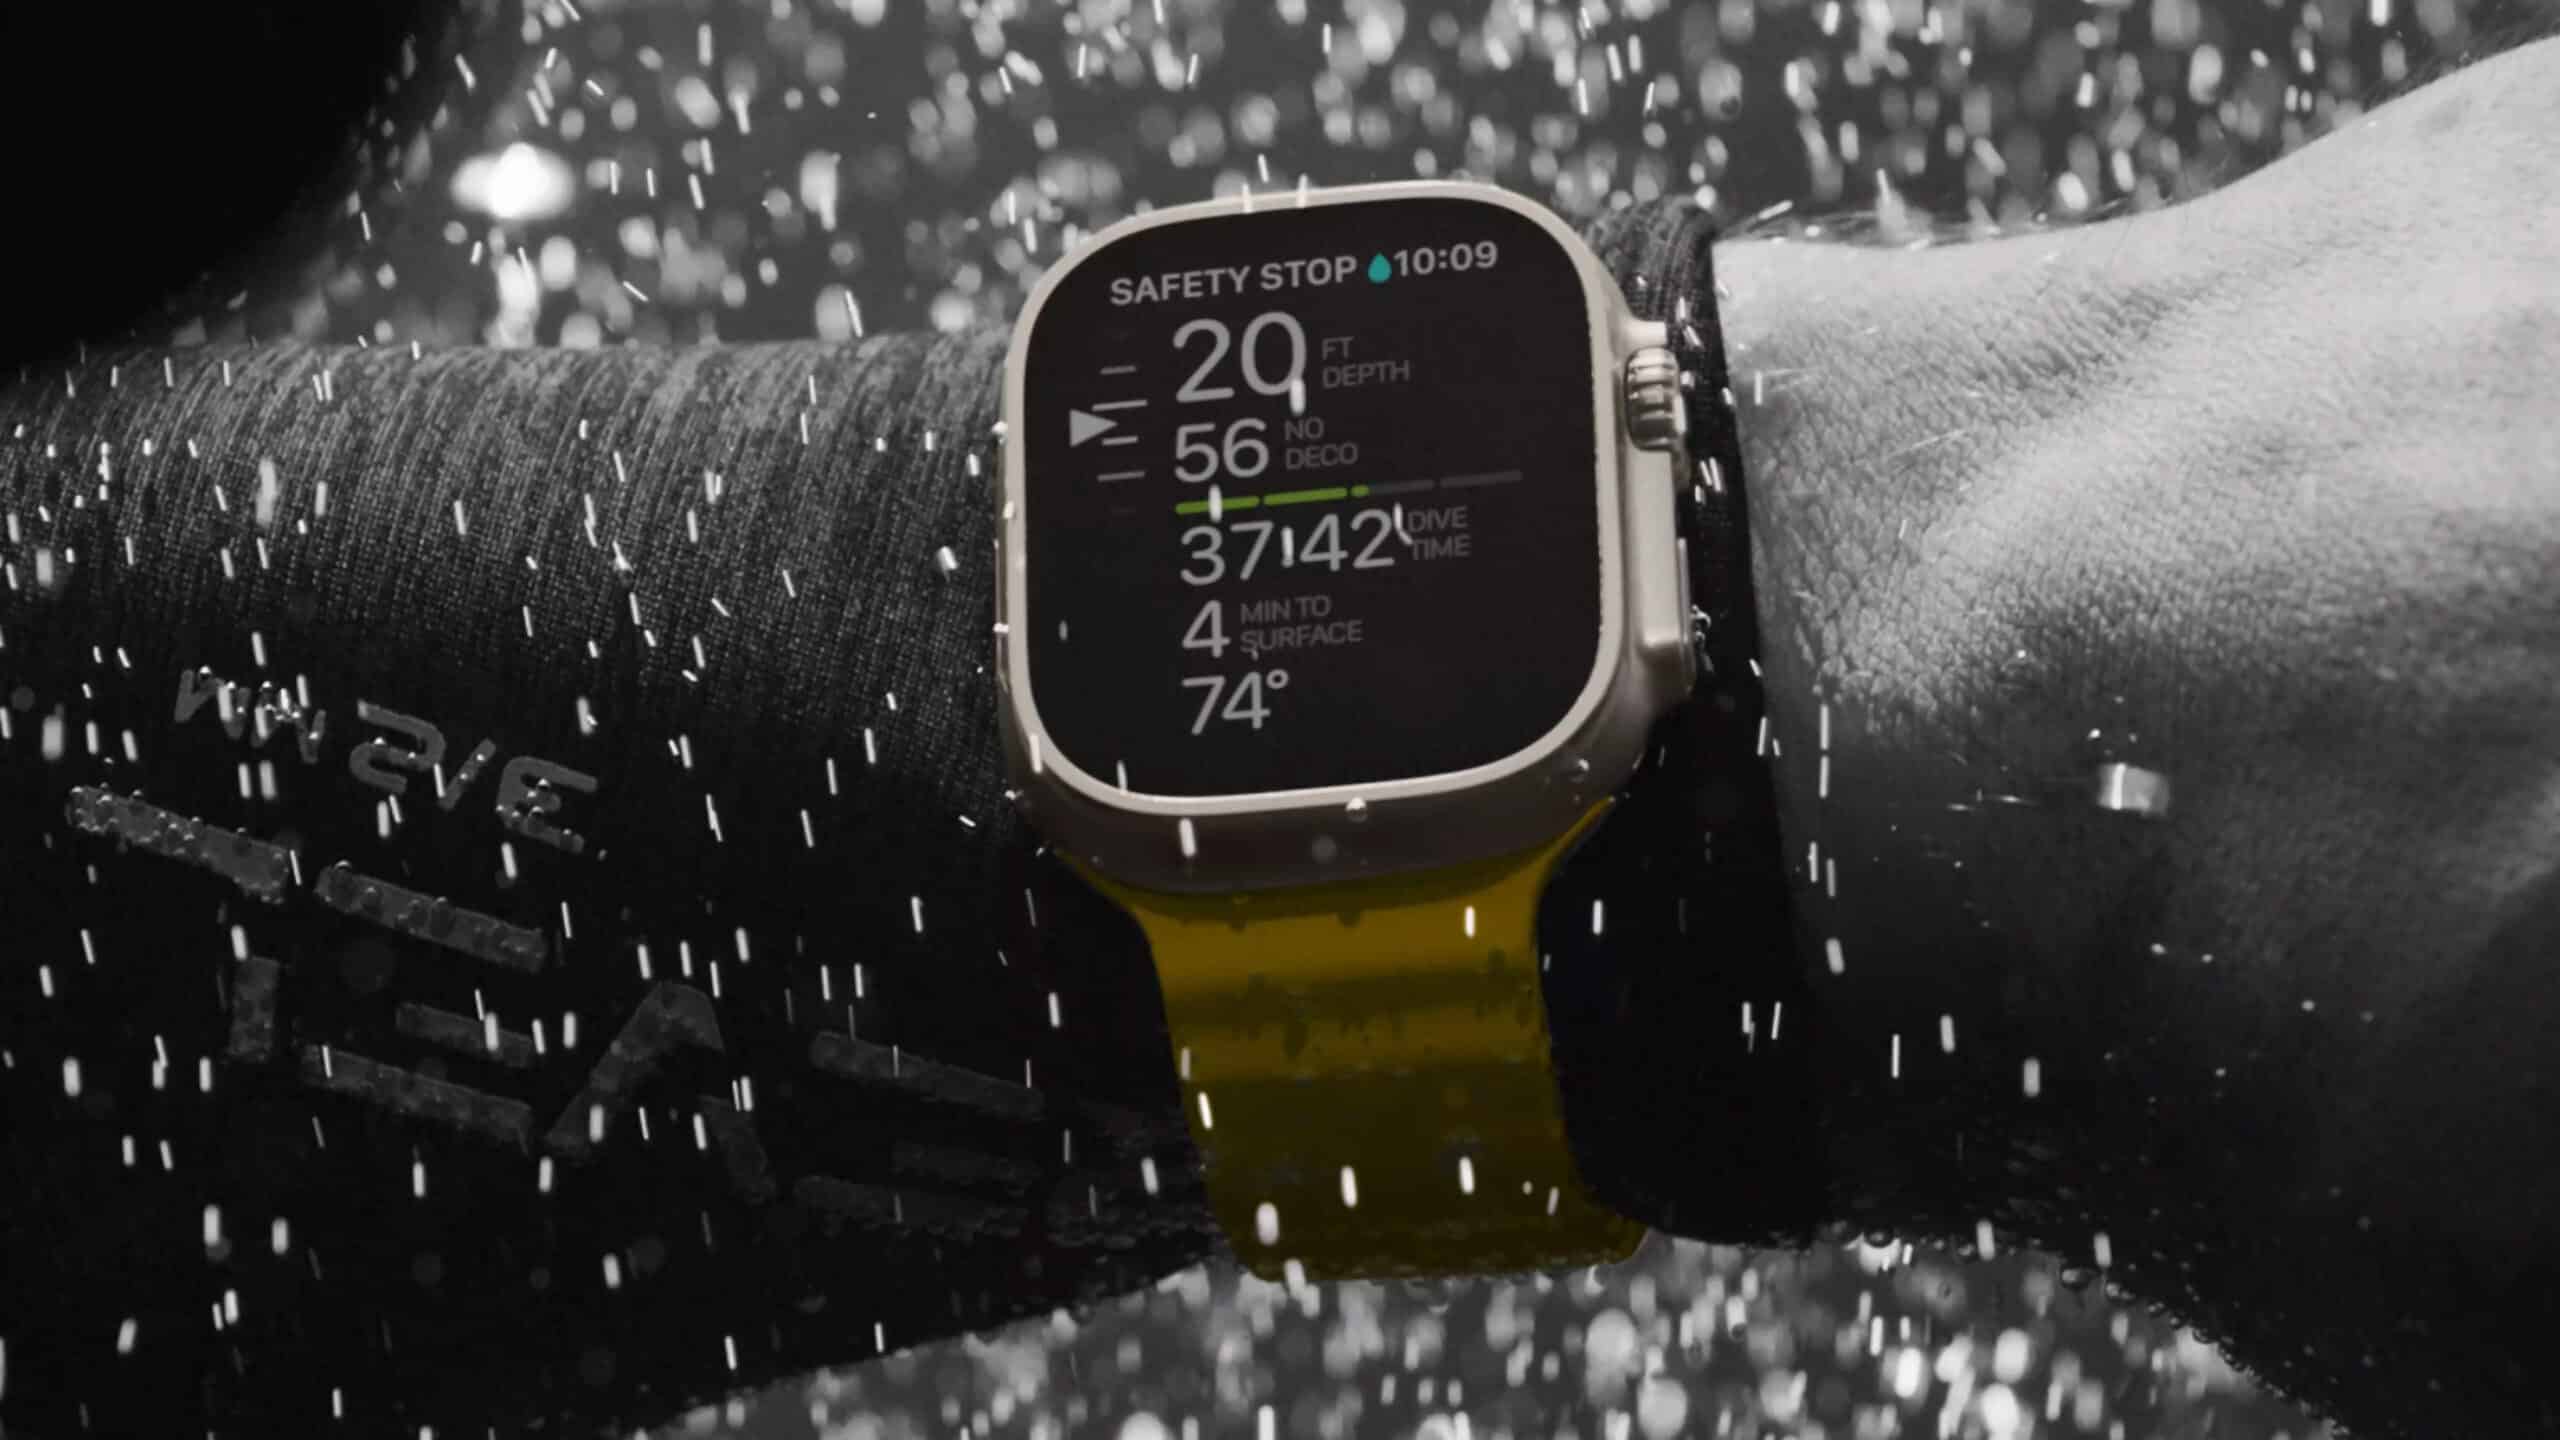 Apple utrzymał tytuł zdecydowanego lidera rynku smartwatchów w 2022 roku, sprzedając dwa razy więcej urządzeń niż Samsung i Huawei razem wzięte